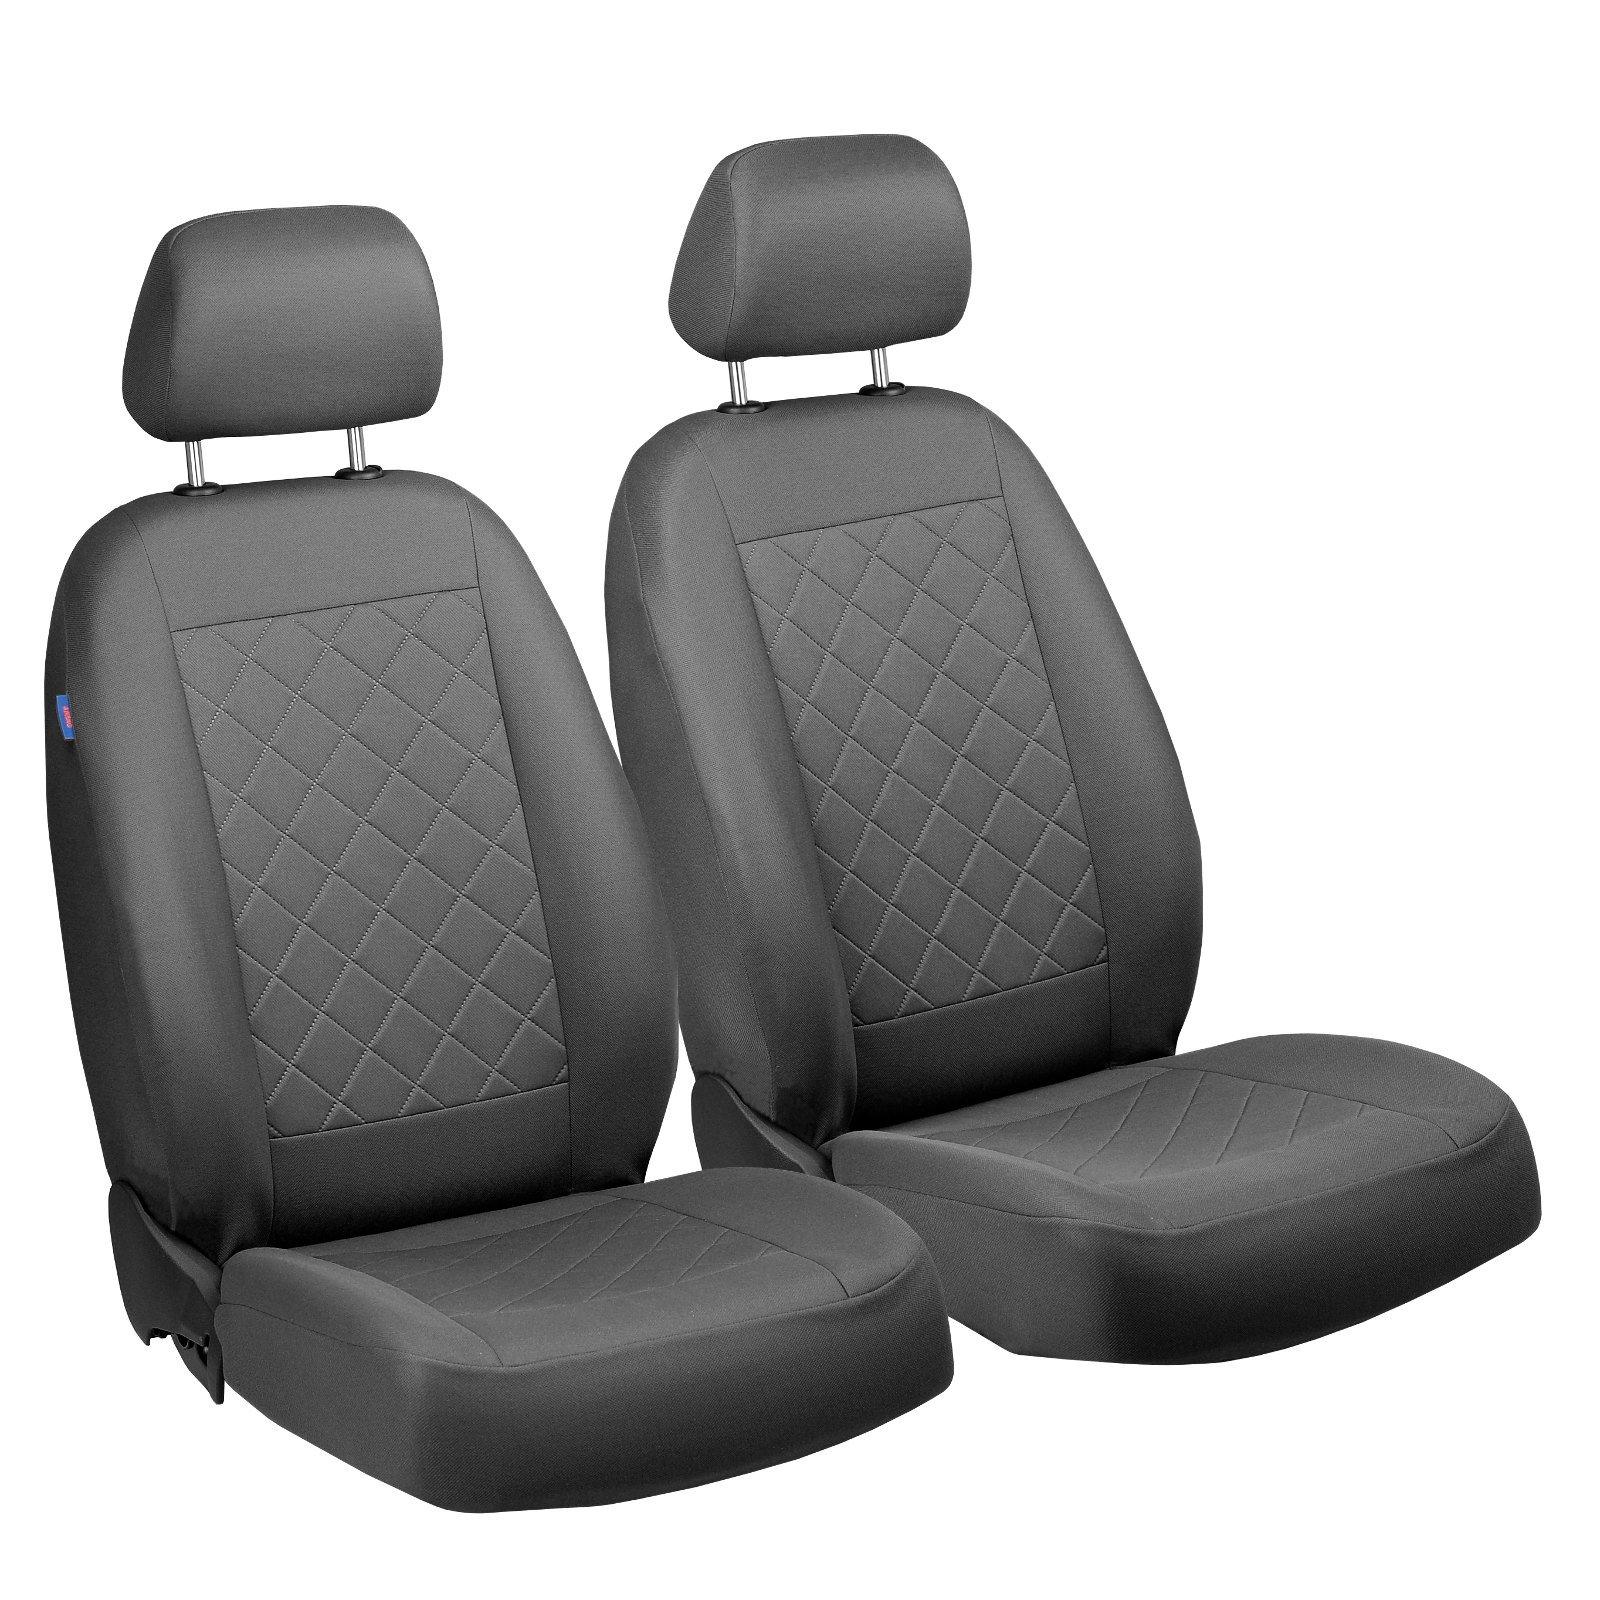 147 Vorne Sitzbezüge - für Fahrer und Beifahrer - Farbe Premium Grau Gepresstes Karomuster